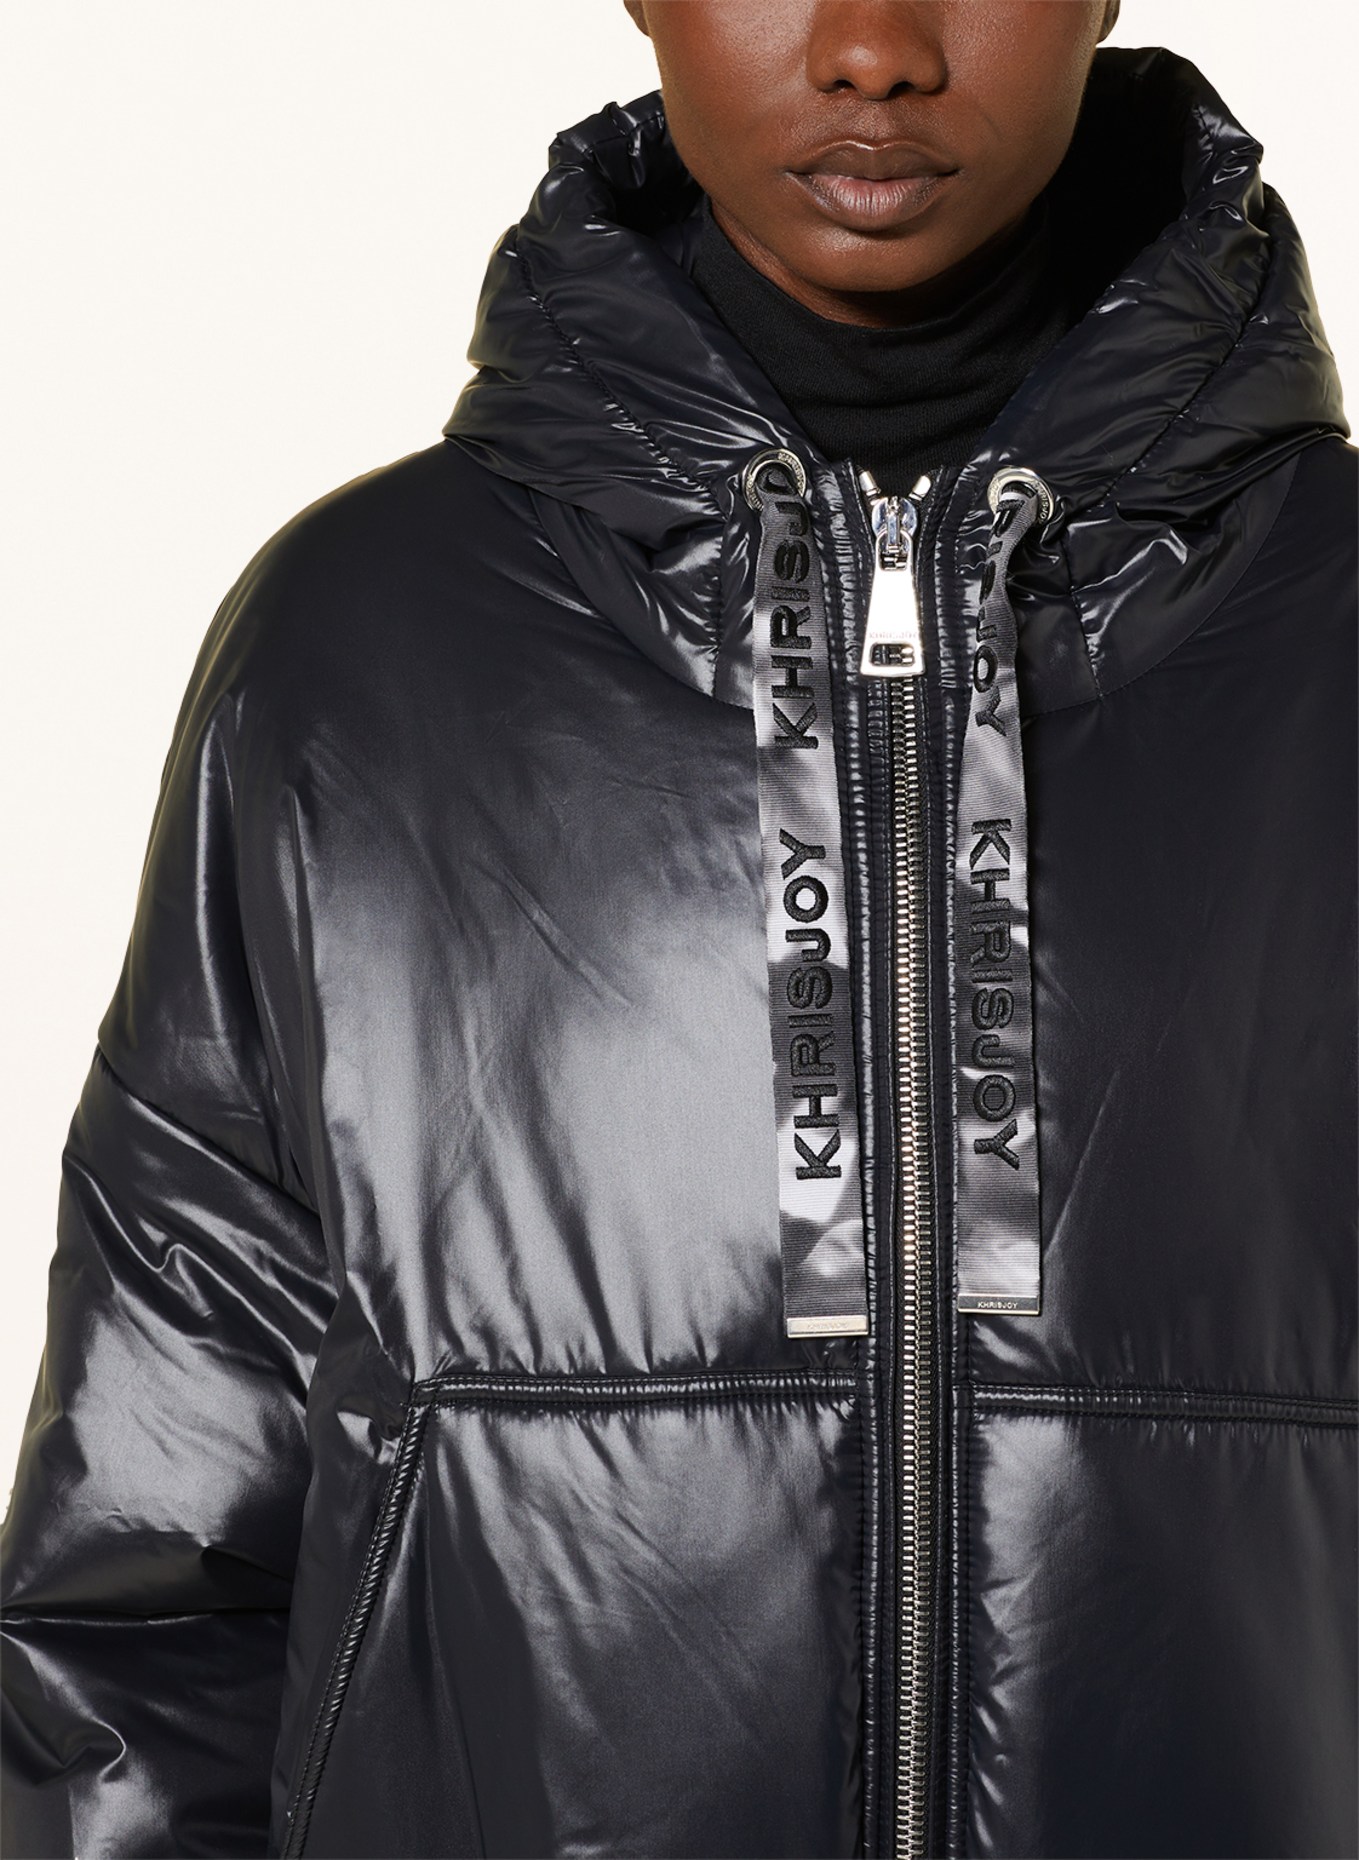 KHRISJOY Jacket, Color: BLACK (Image 5)